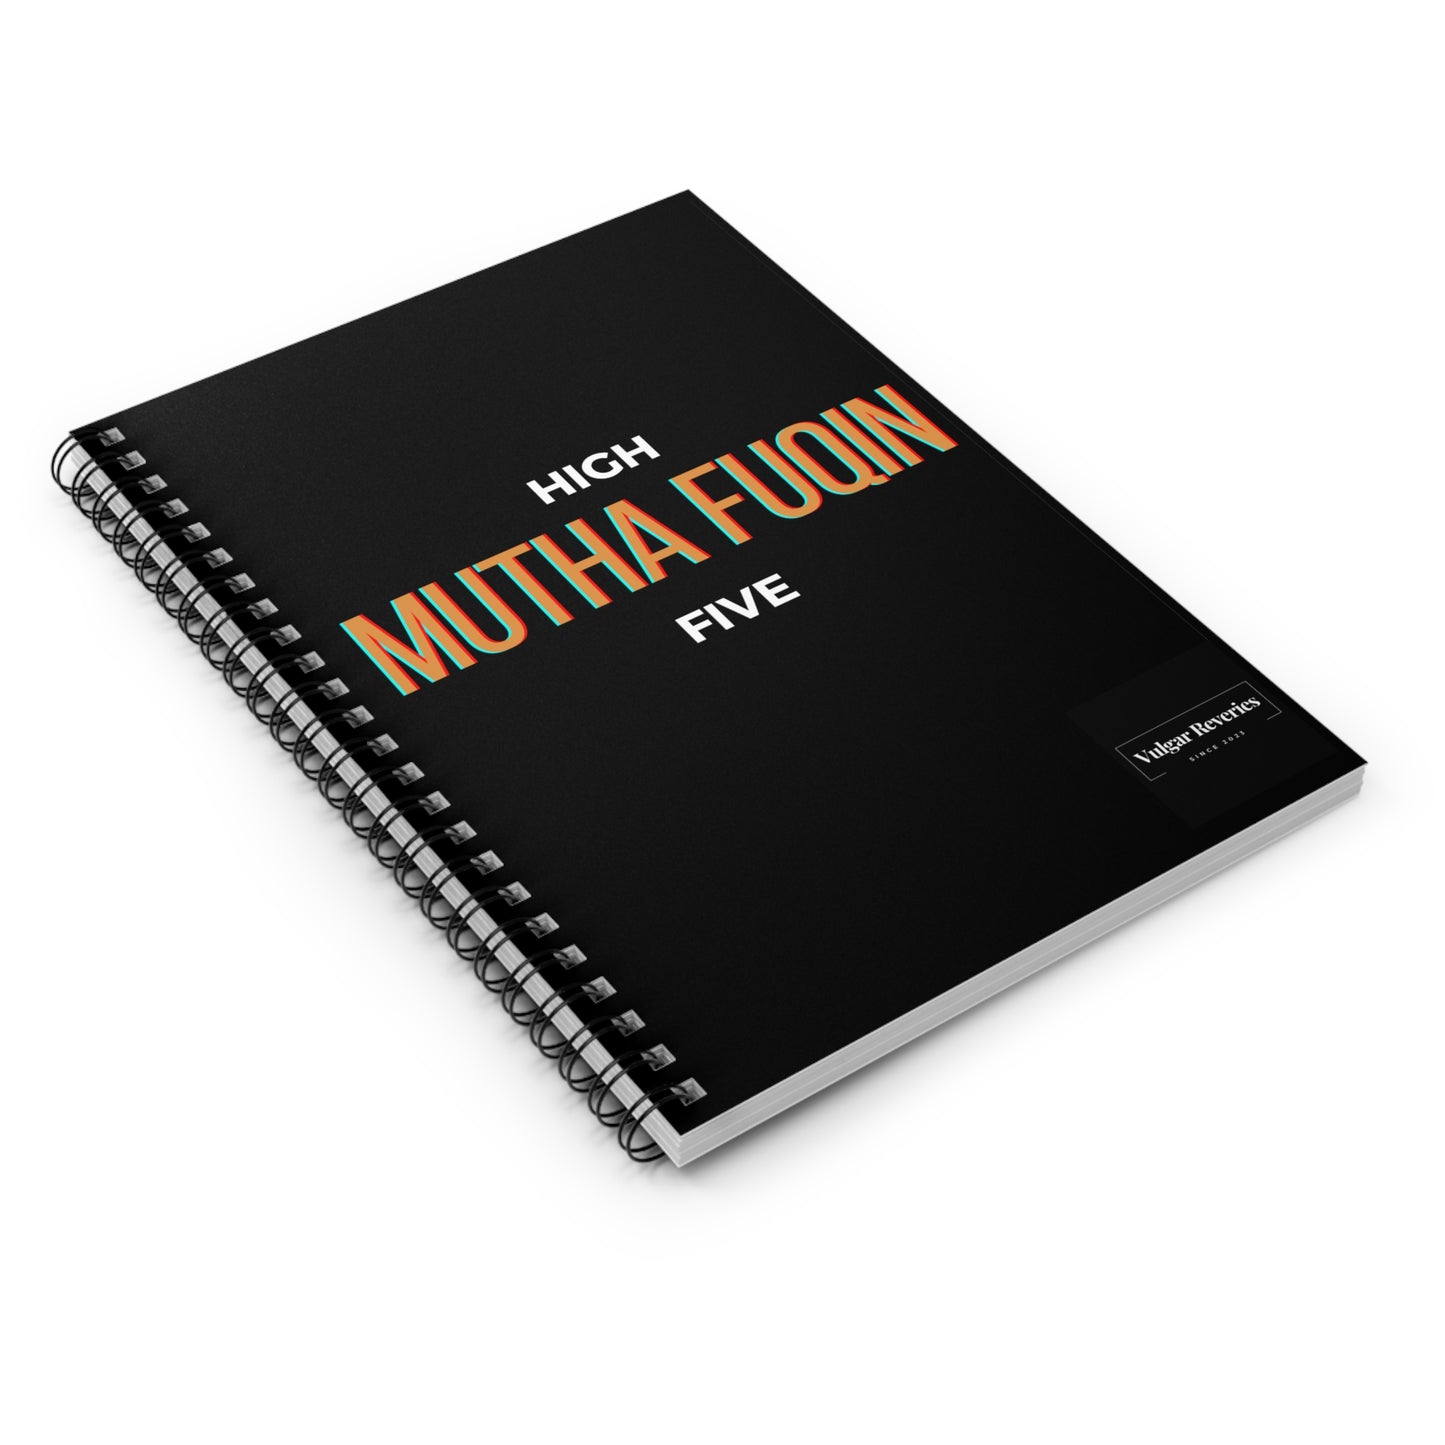 High Mutha Fuqin Five - Spiral Notebook - Ruled Line